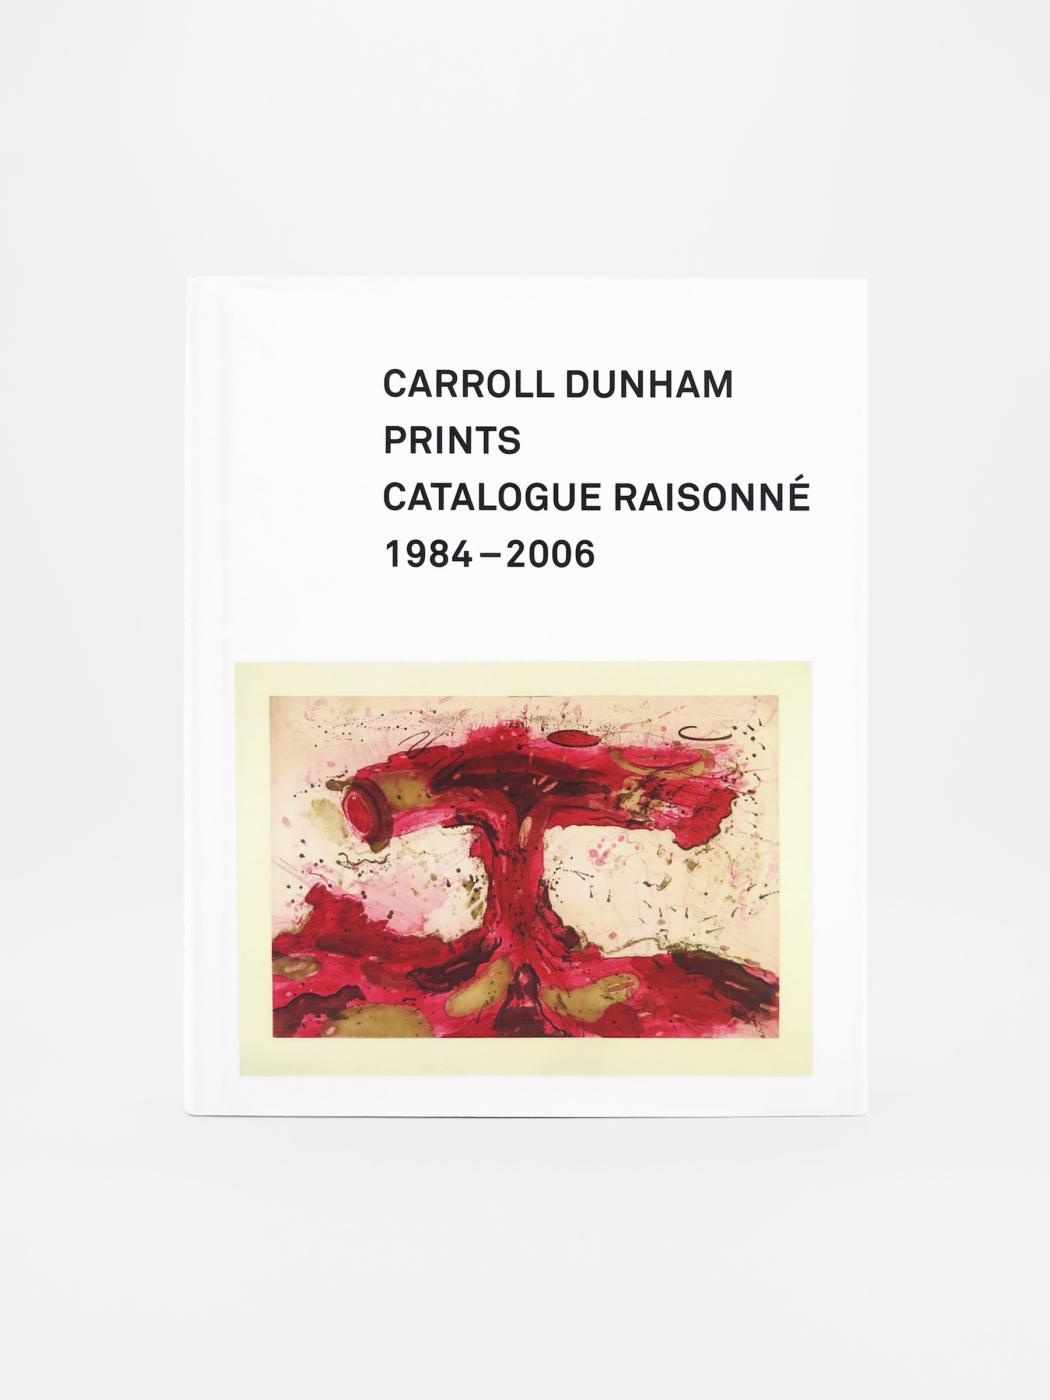 Carroll Dunham, Prints Catalogue Raisonne 1984-2006